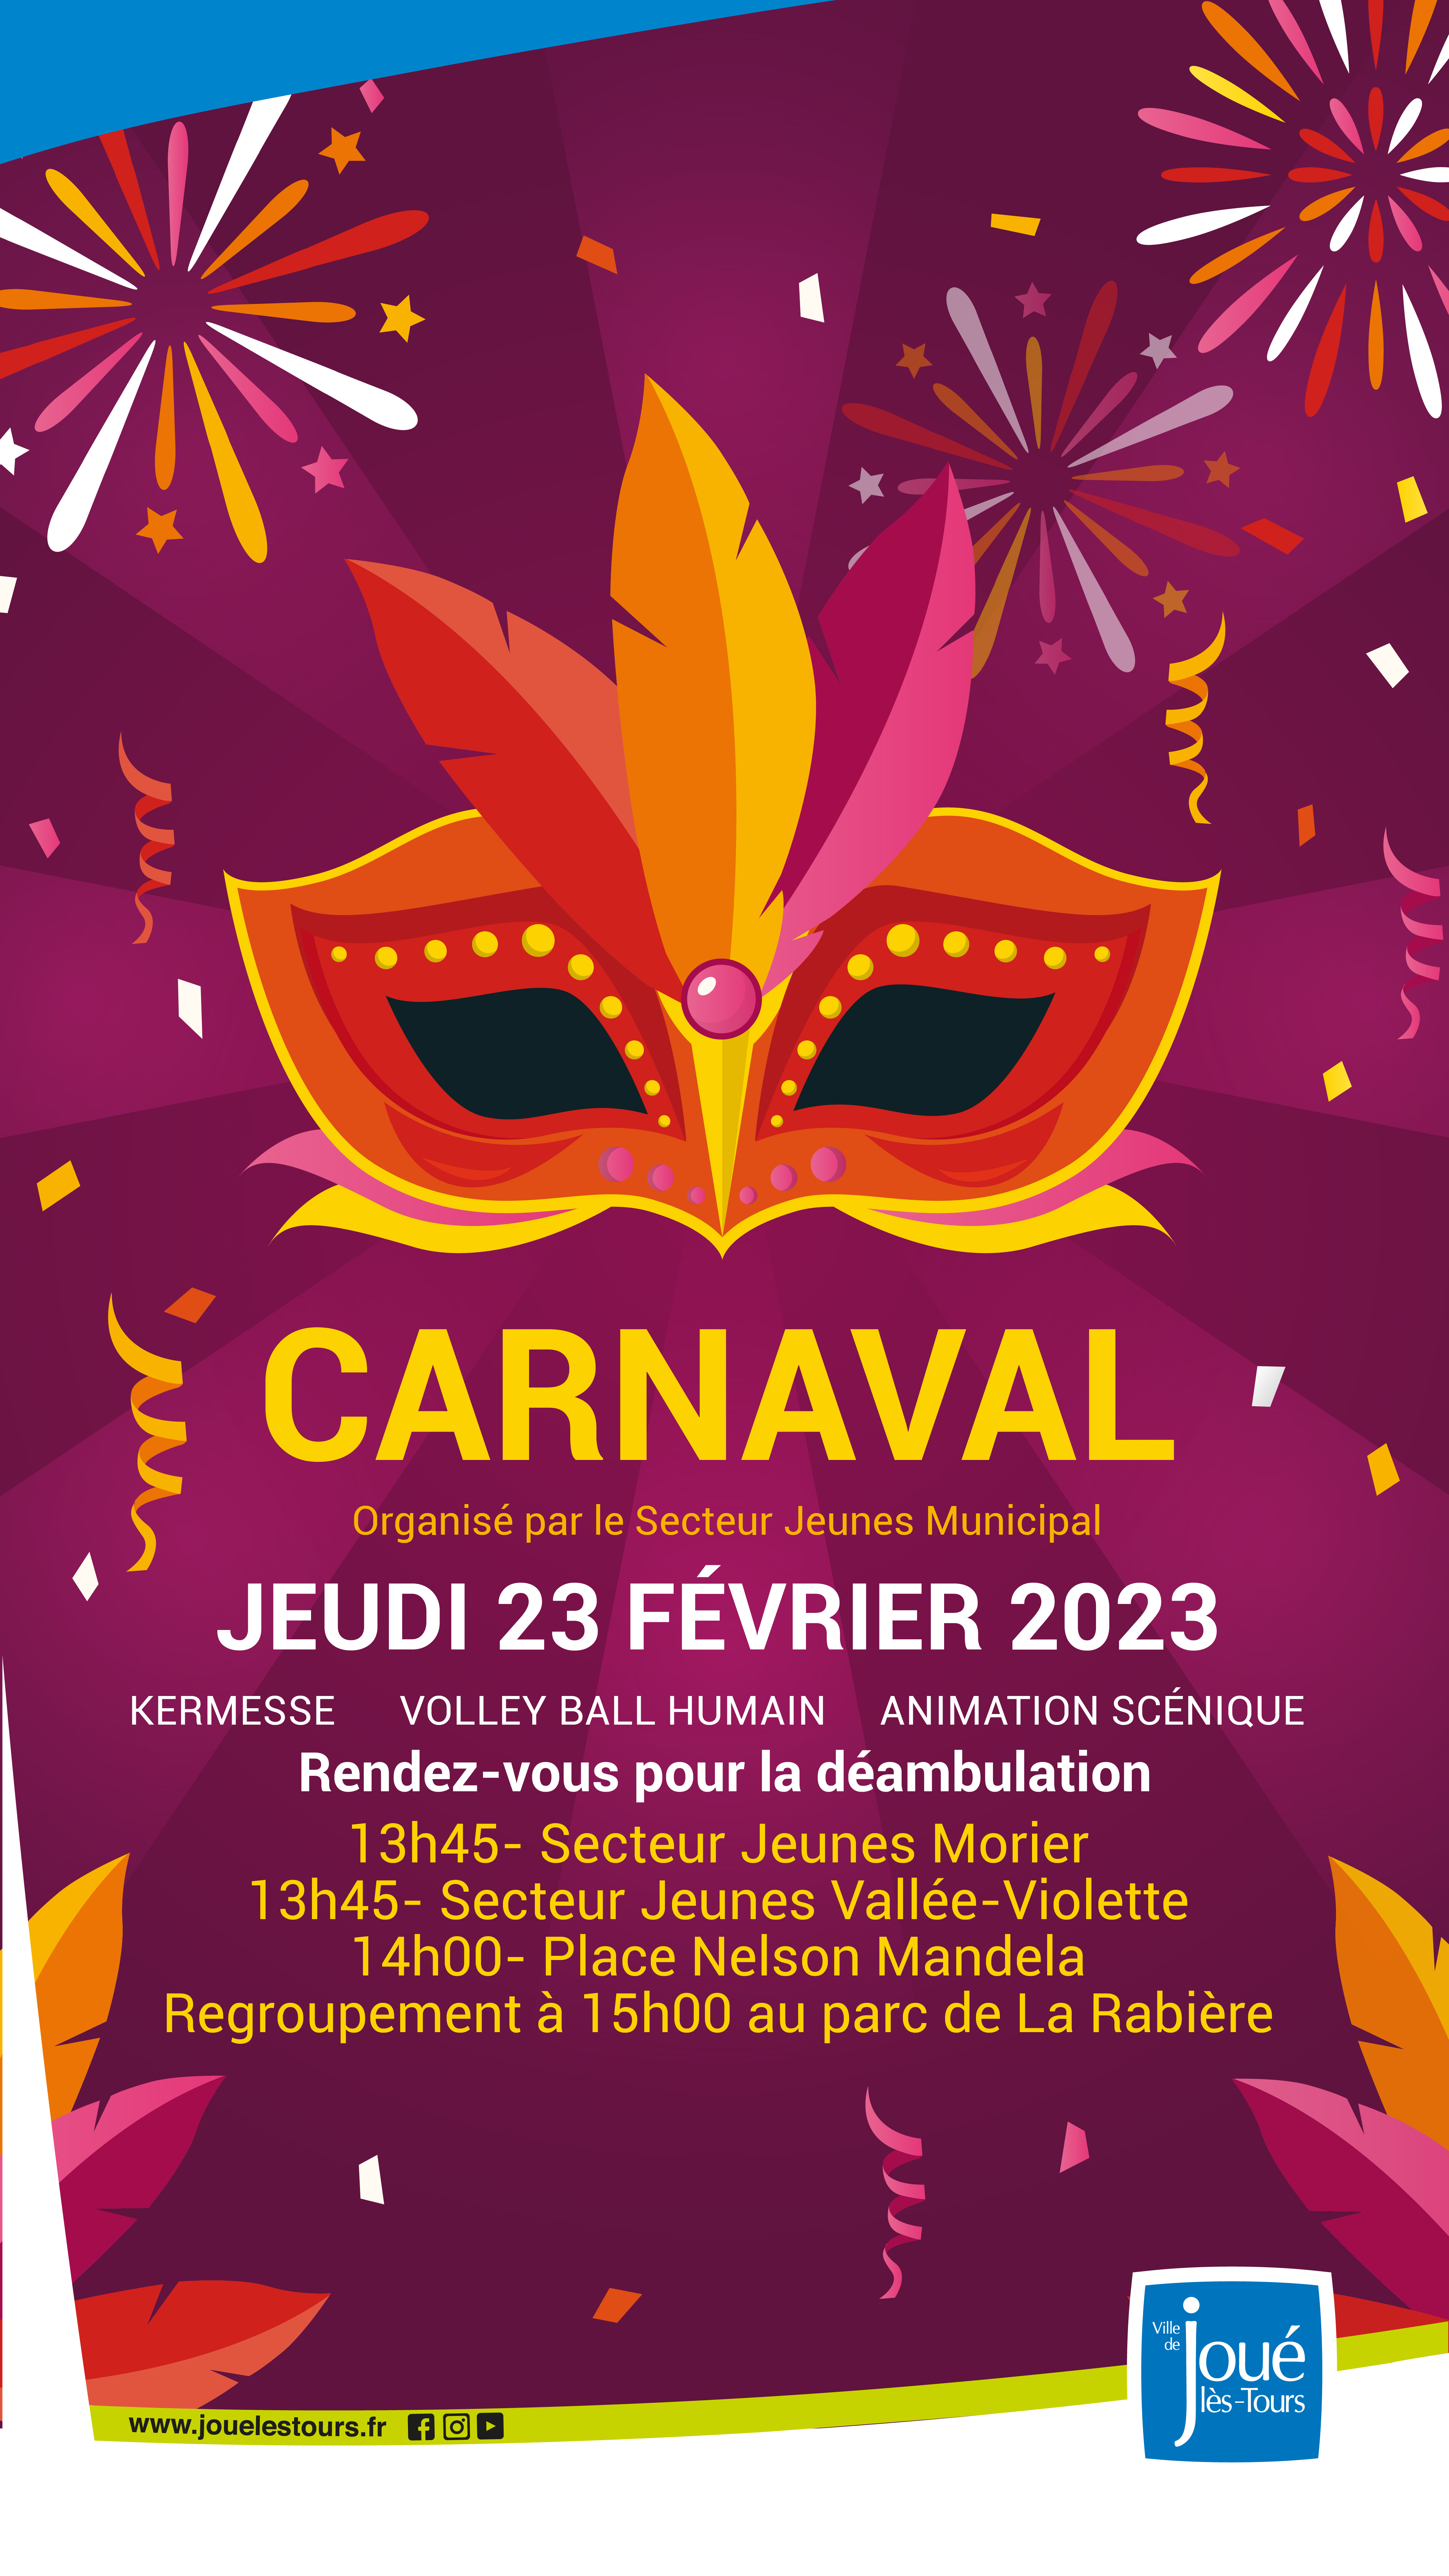 Carnaval Story ©ville de joué lès tours